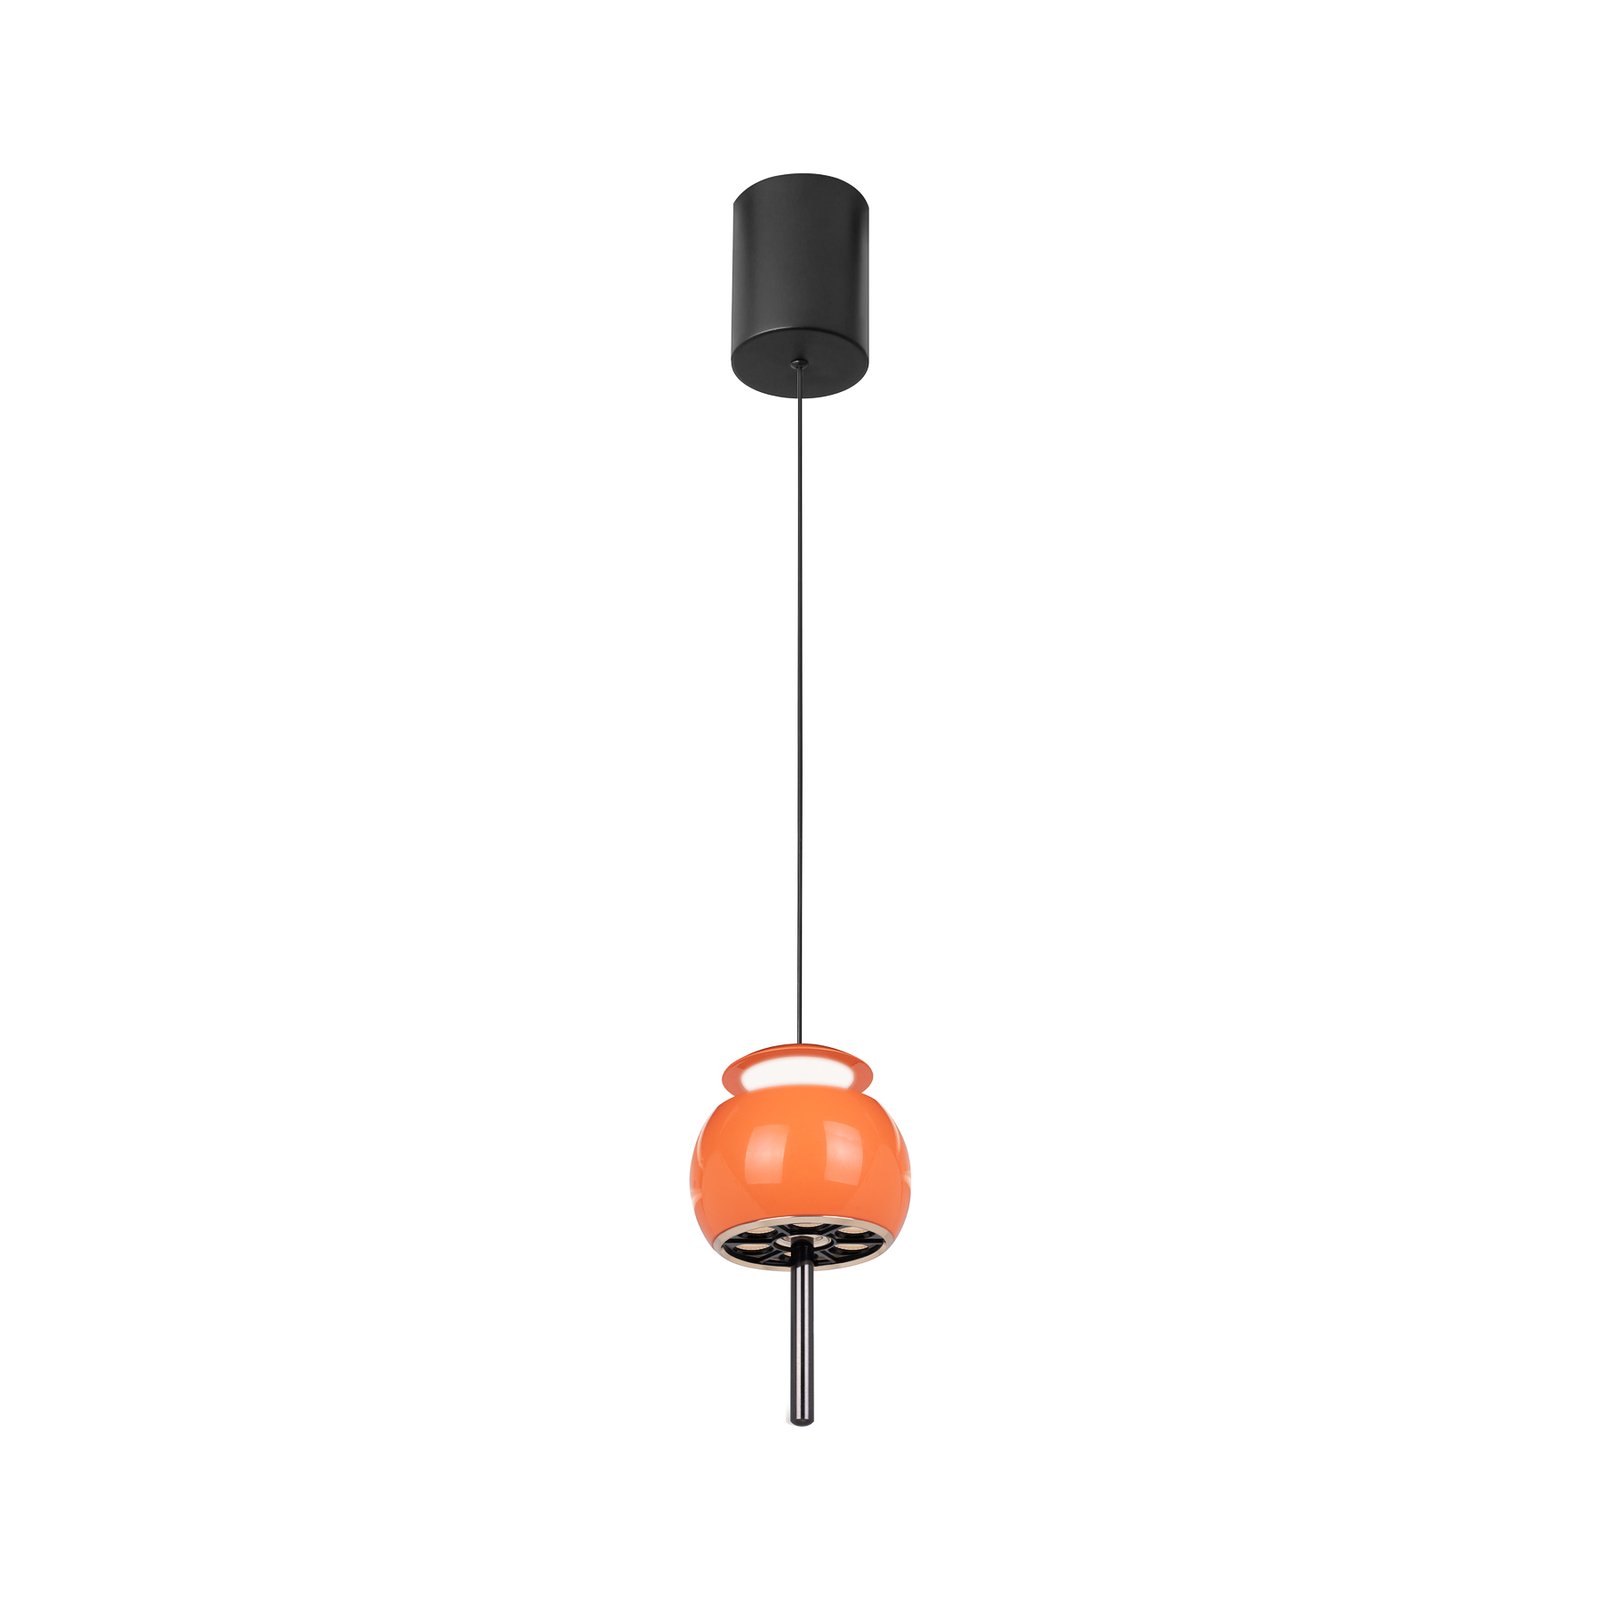 LED-Hängelampe Roller, orange, höhenverstellbar, Zugstange